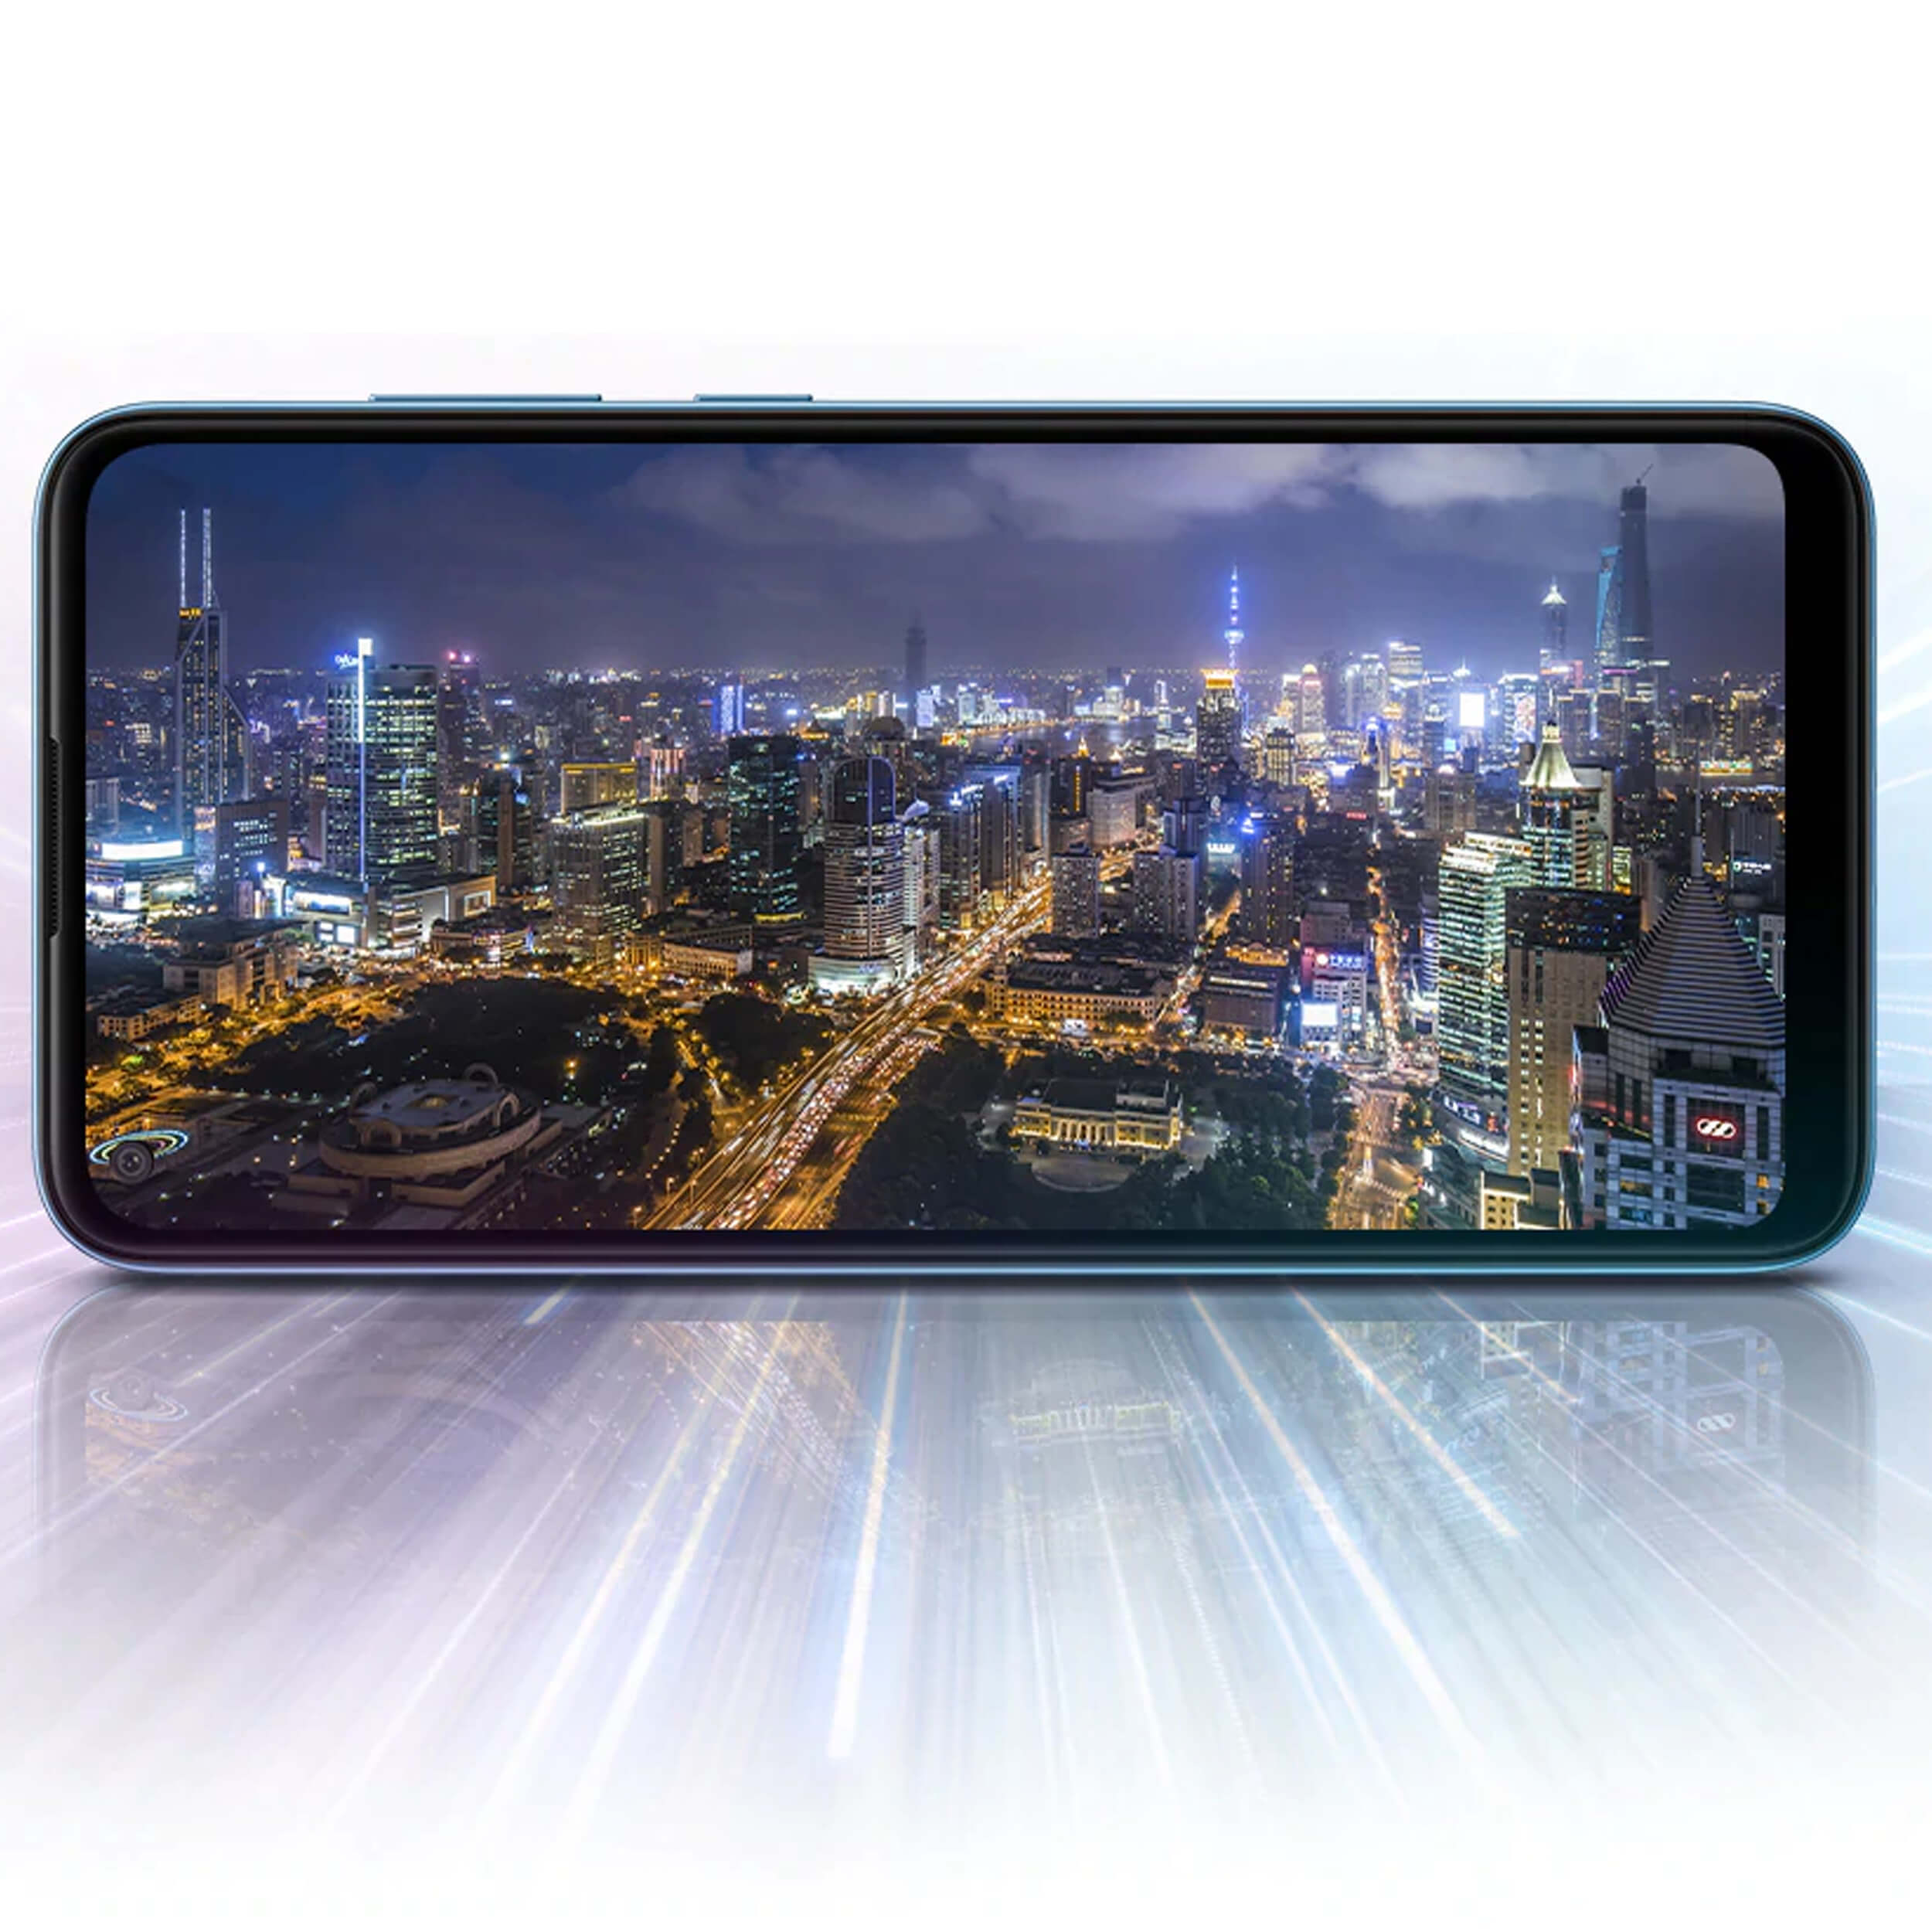 گوشی موبایل سامسونگ Galaxy A11 32GB رم 2 گیگابایت دو سیم کارت